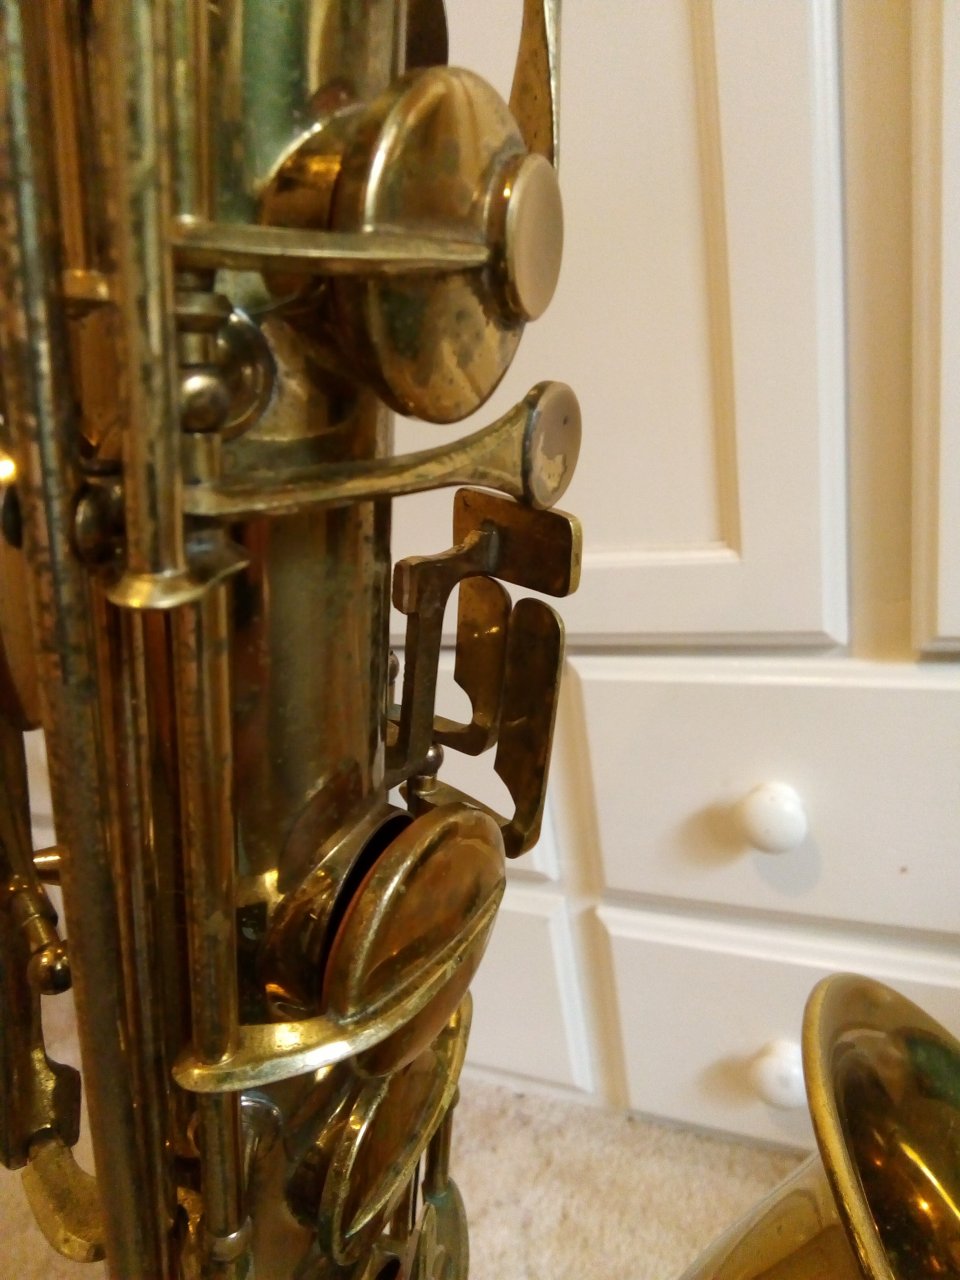 Serial orsi numbers saxophone Vintage Saxophone